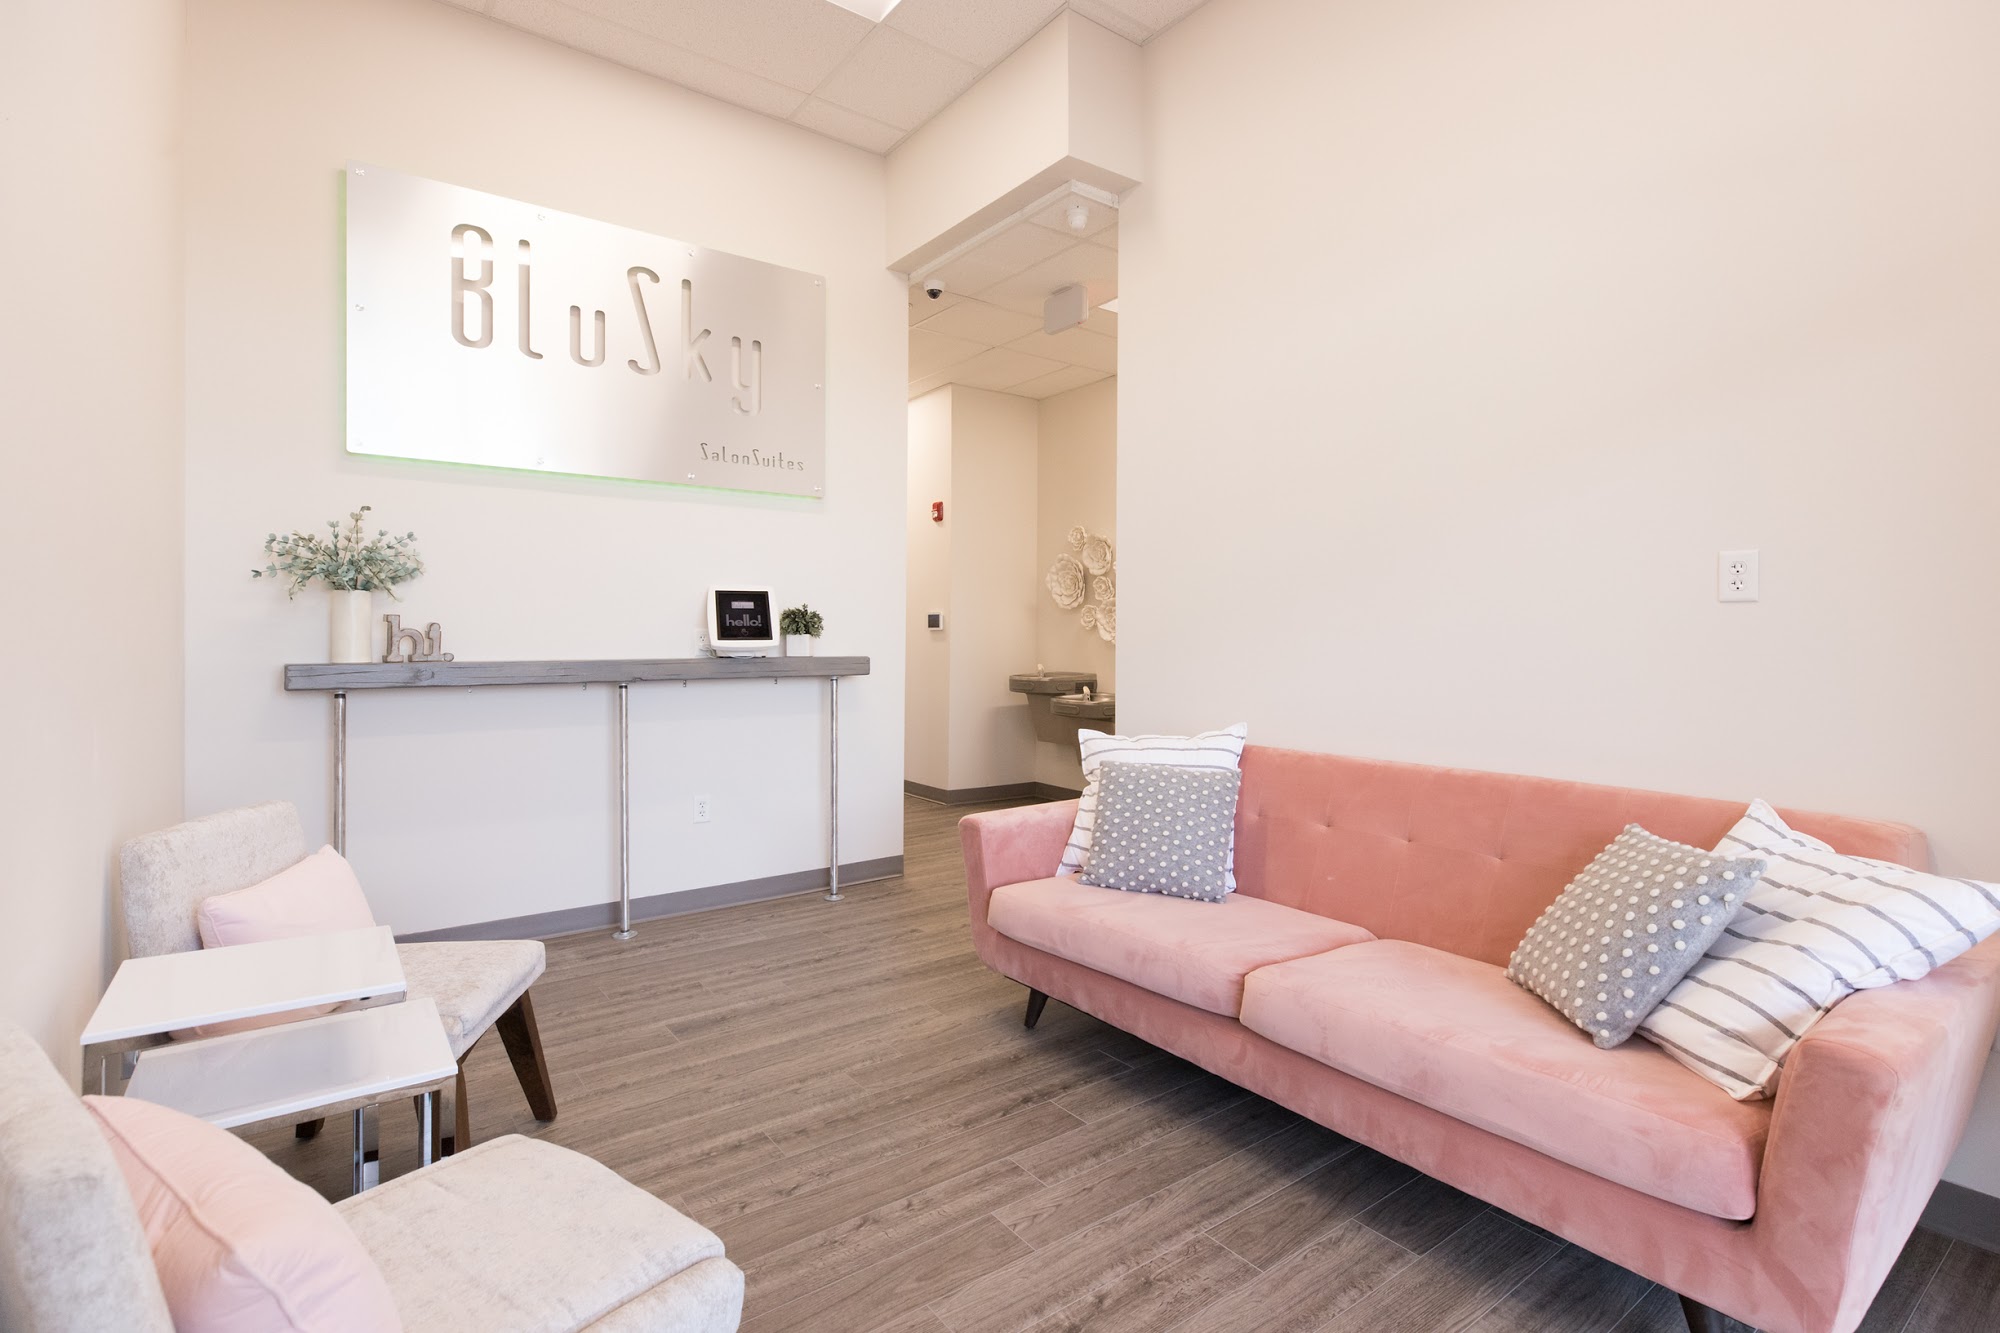 BluSky Salon Suites